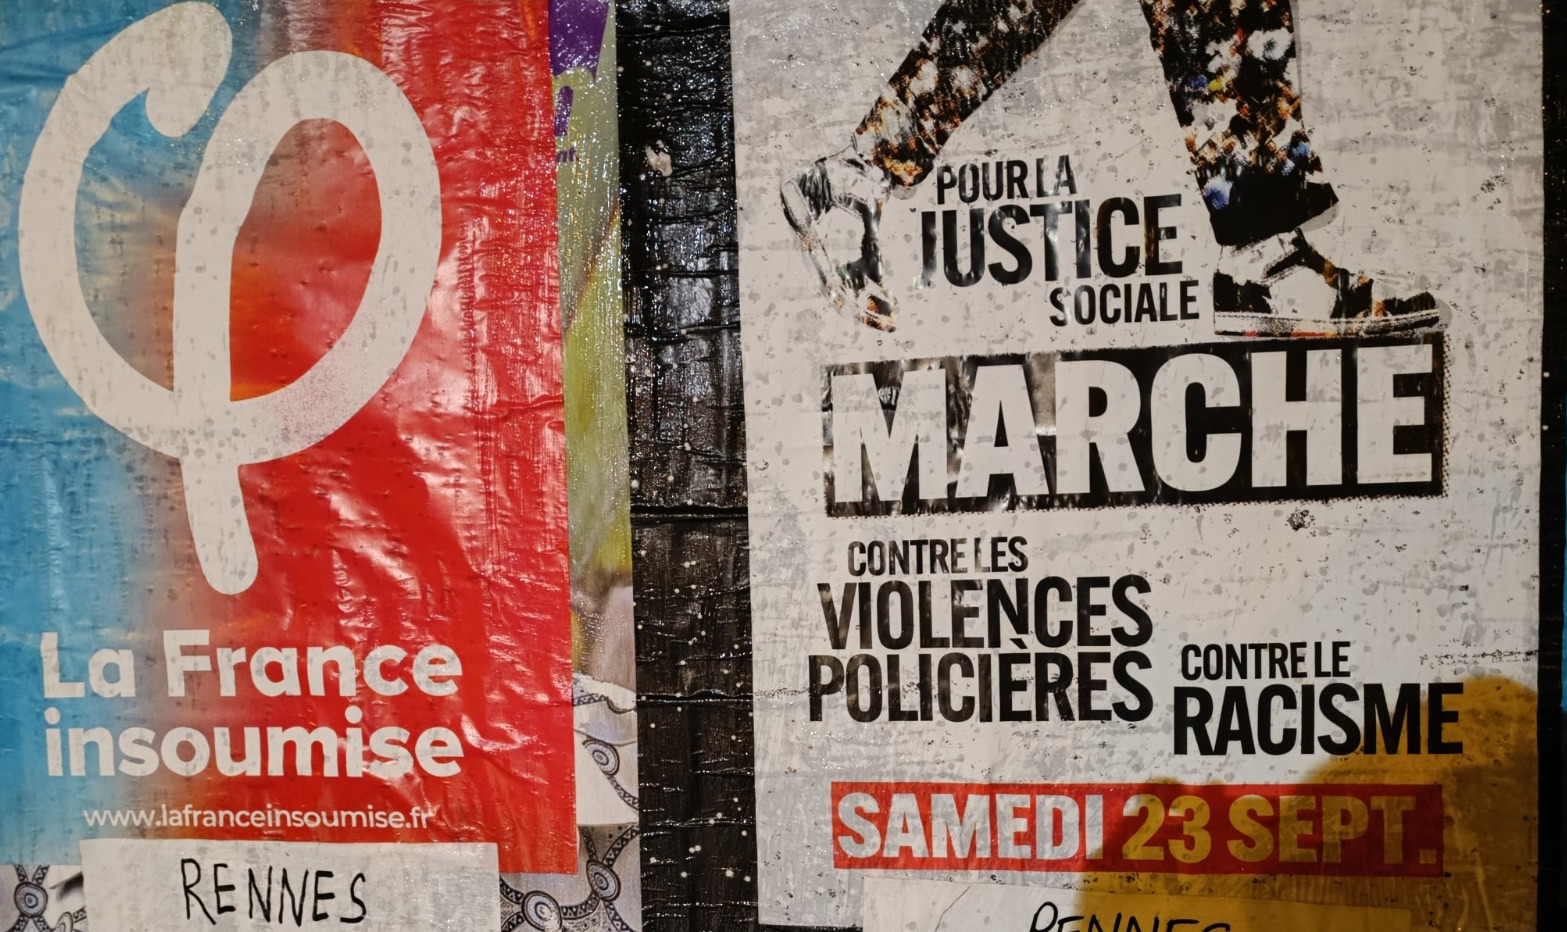 São esperados de 24 mil a 30 mil participantes, em 116 manifestações em todo o território francês